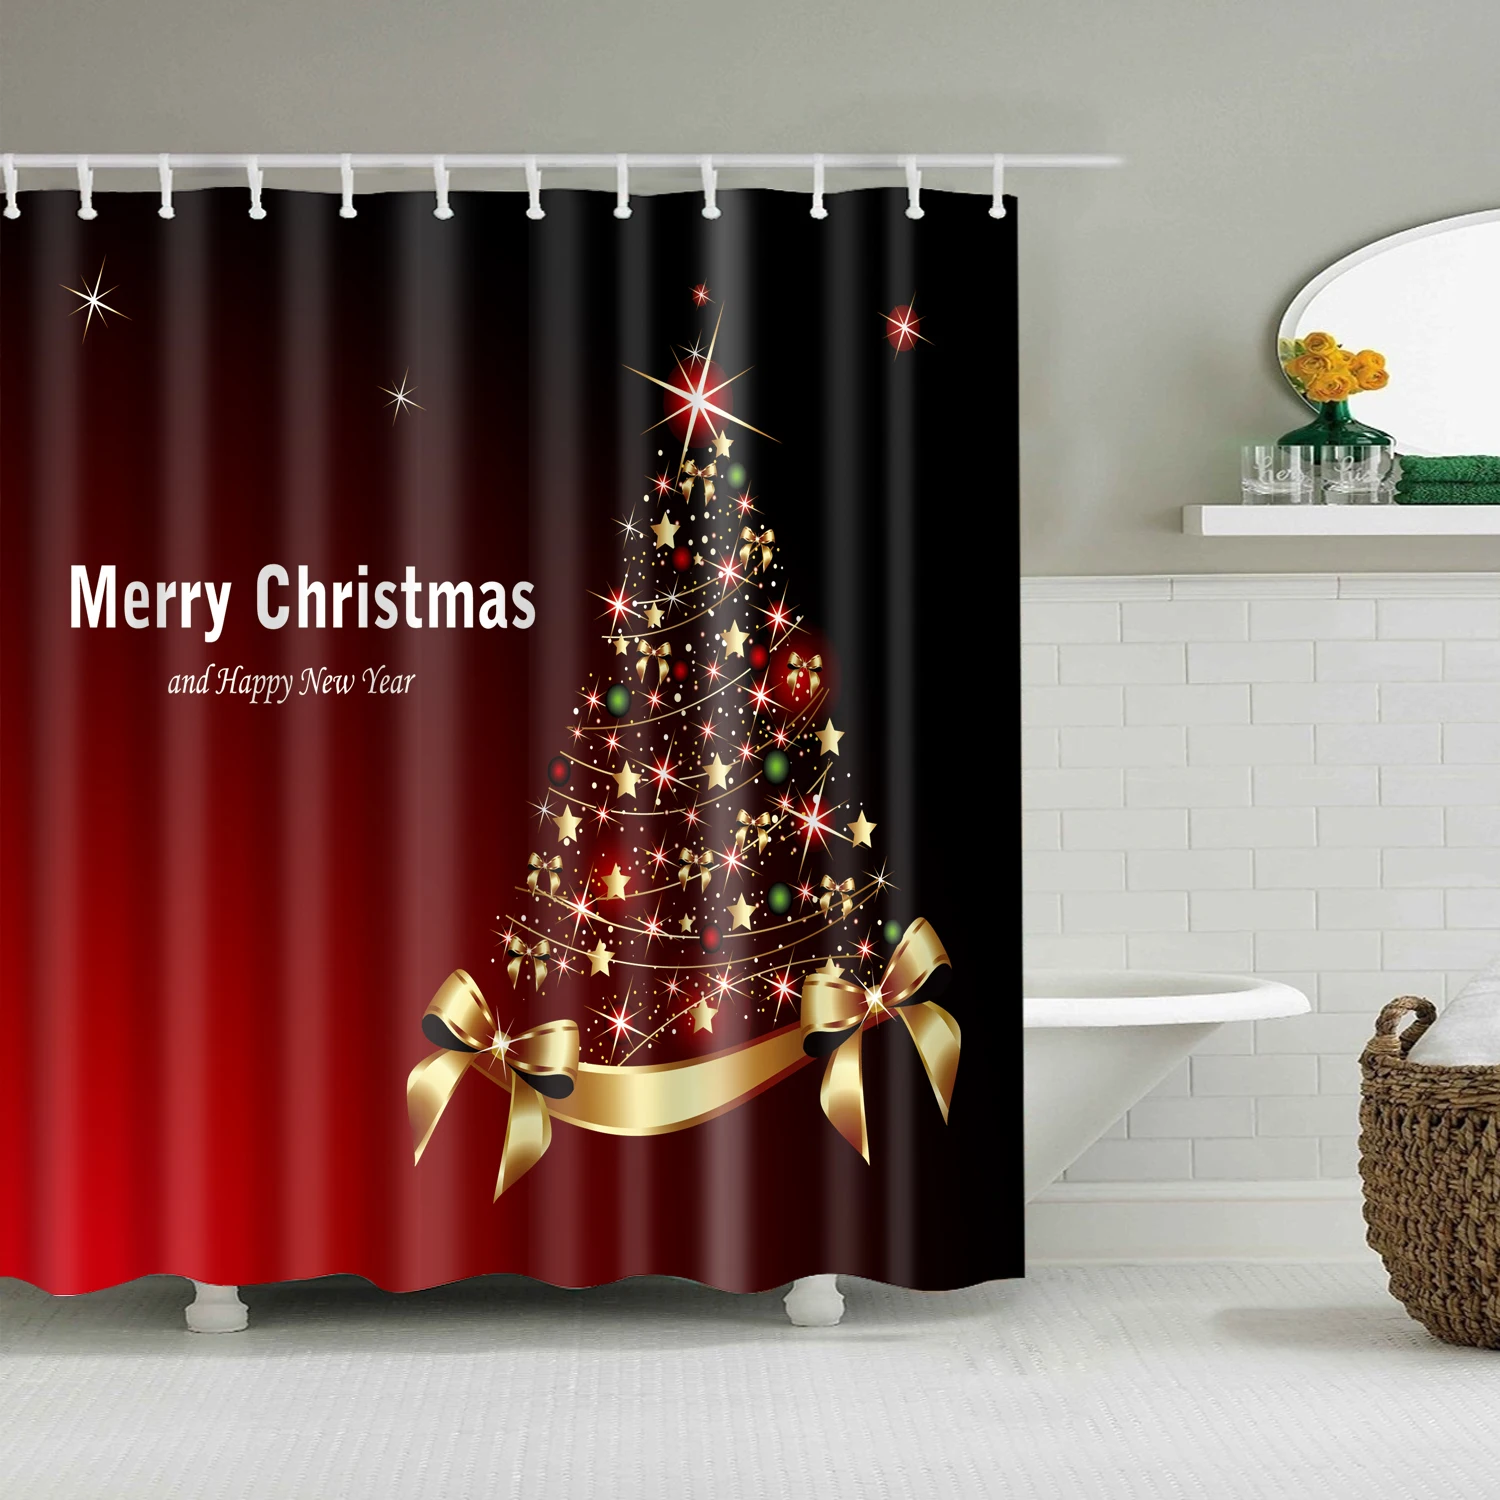 Светящаяся Рождественская занавеска для душа, Новогодняя Водонепроницаемая красная занавеска s для душа, ванной комнаты, рождественские украшения, подарки 200x150 см - Цвет: B1025